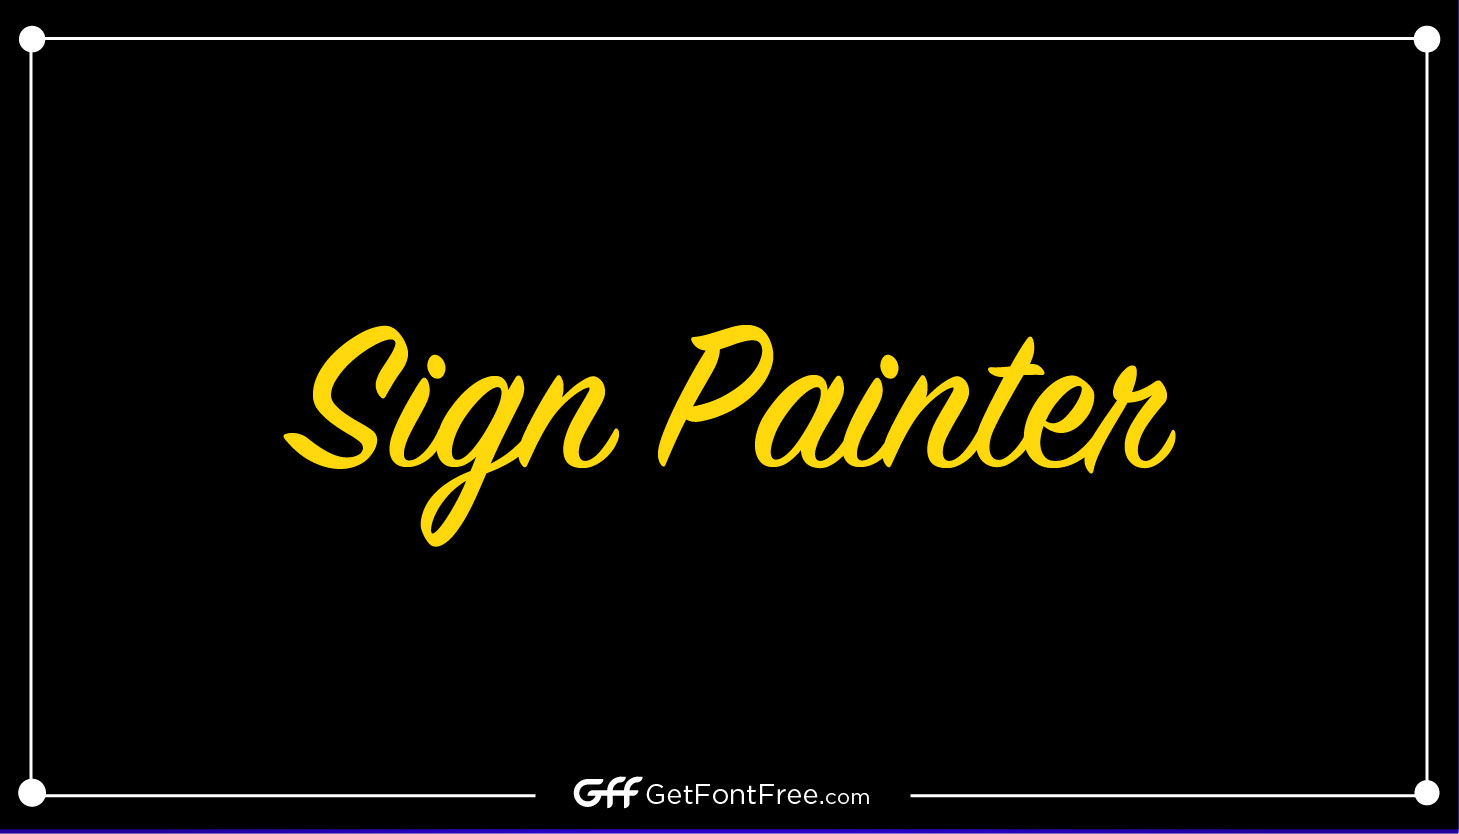 Sign Painter Font